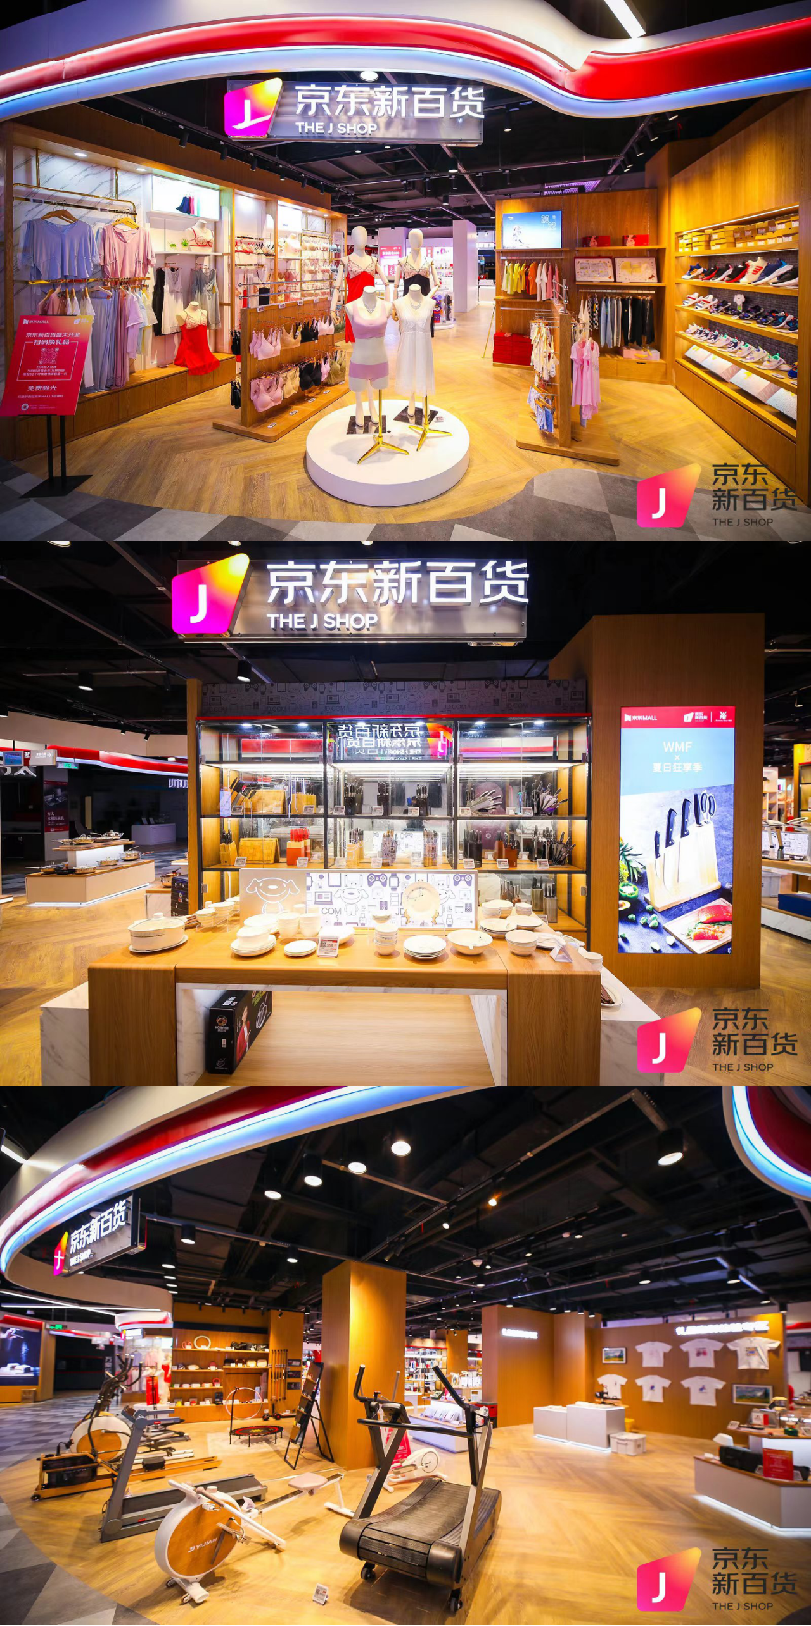 京东新百货创新业态试点合作店亮相西安 覆盖150个品类、近300个品牌